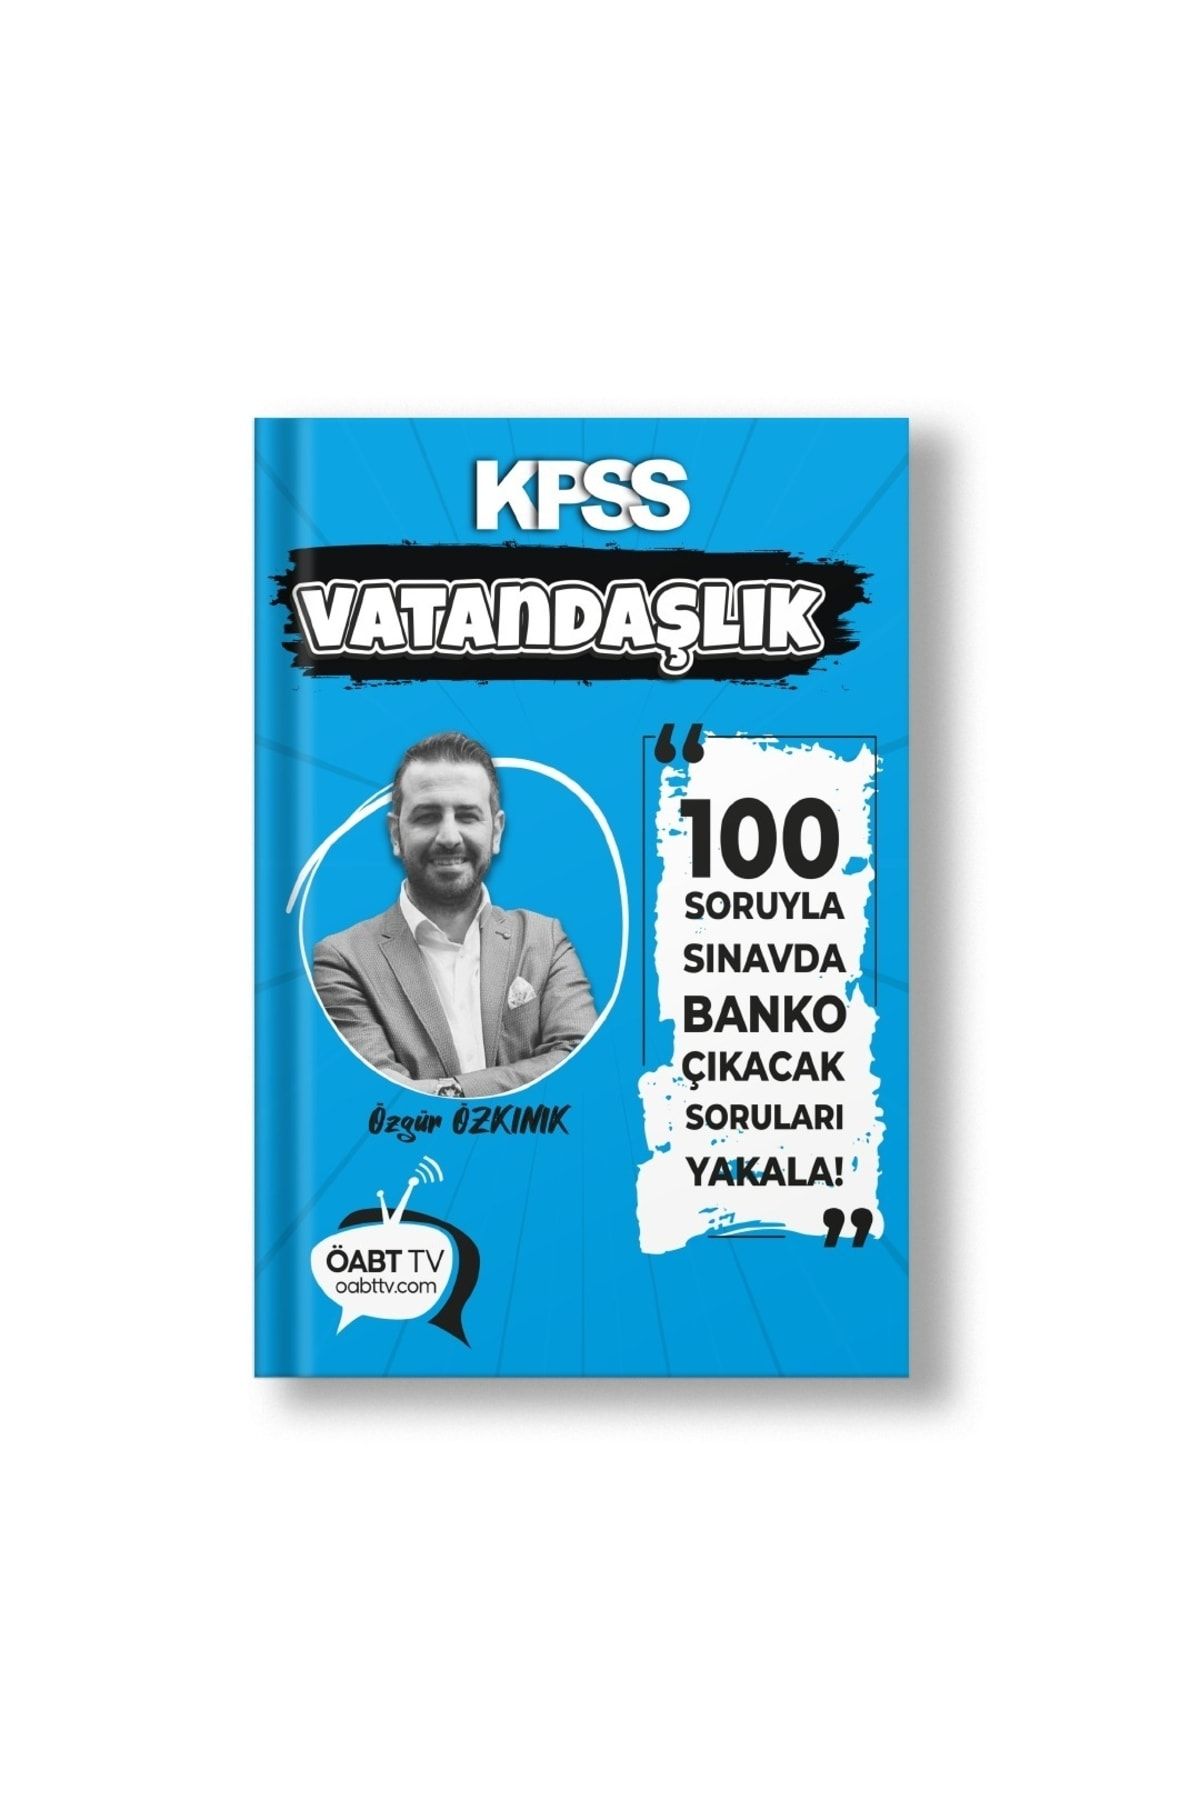 TKM Akademi Kpss Vatandaşlık 100 Soruda Banko Çıkacak Soruları Yakala - Özgür Özkınık-öabt Tv